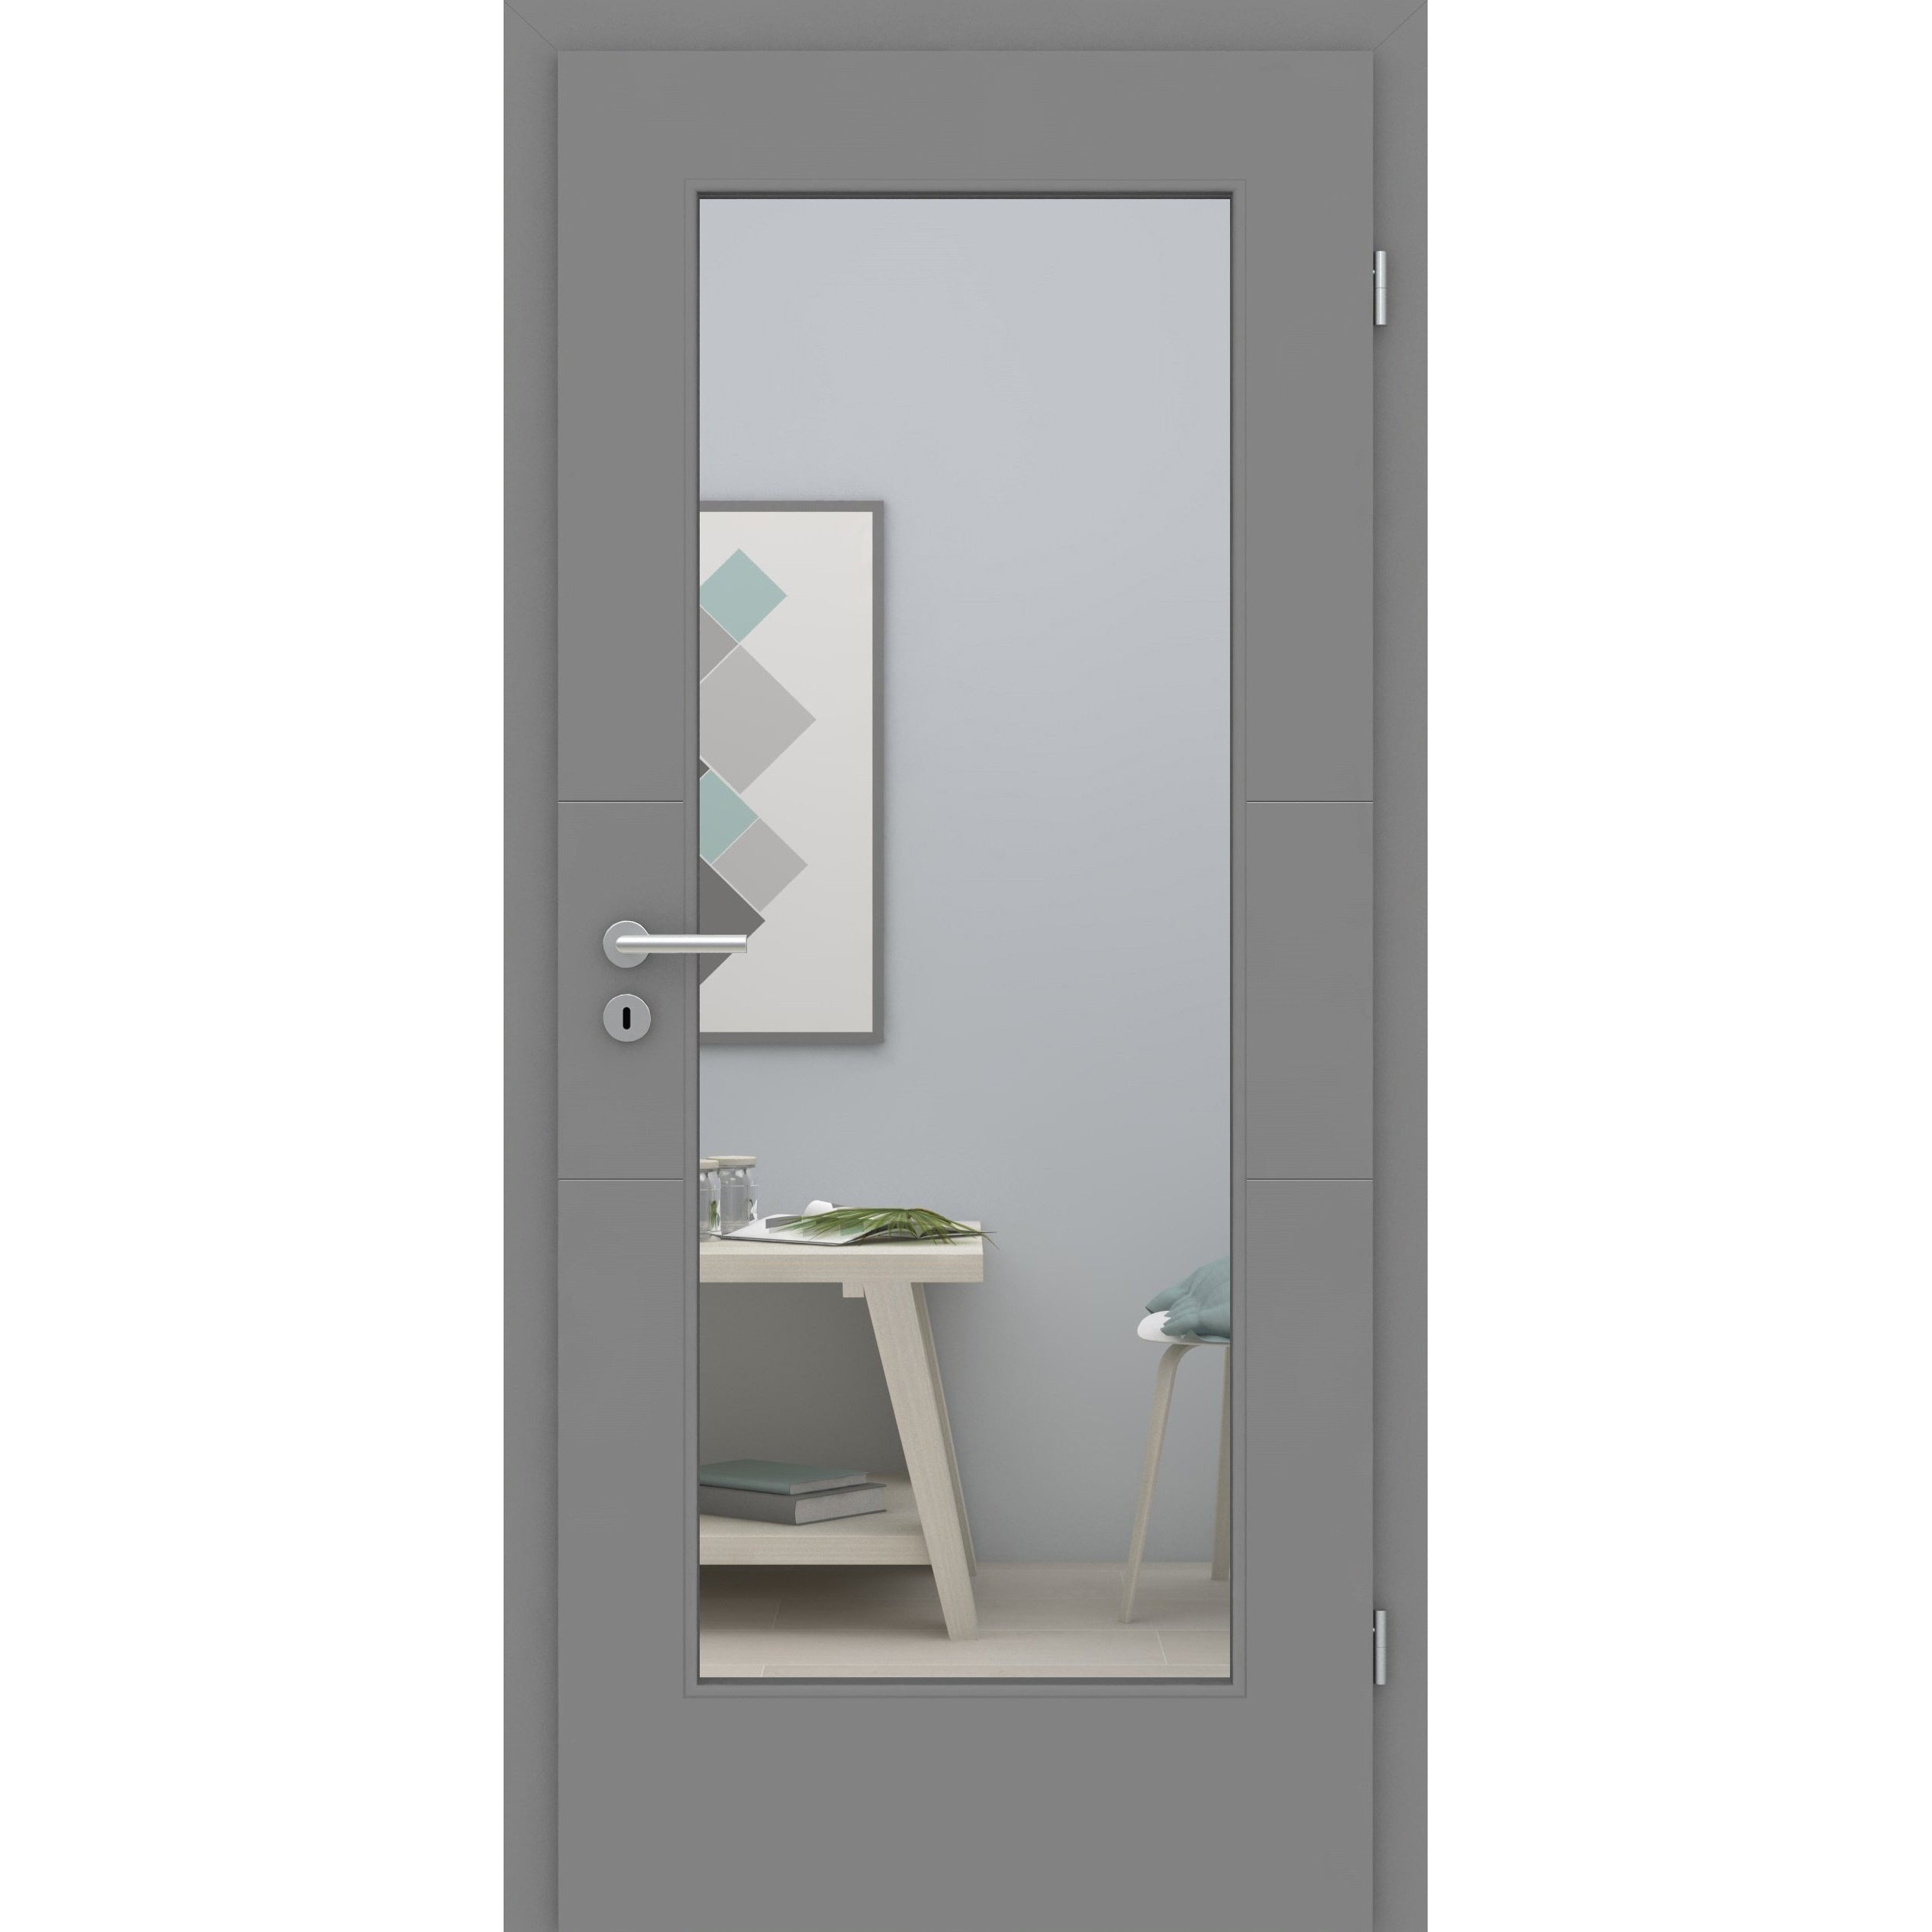 Zimmertür mit Zarge und Lichtausschnitt grau 2 Rillen quer Designkante - Modell Designtür Q27LA